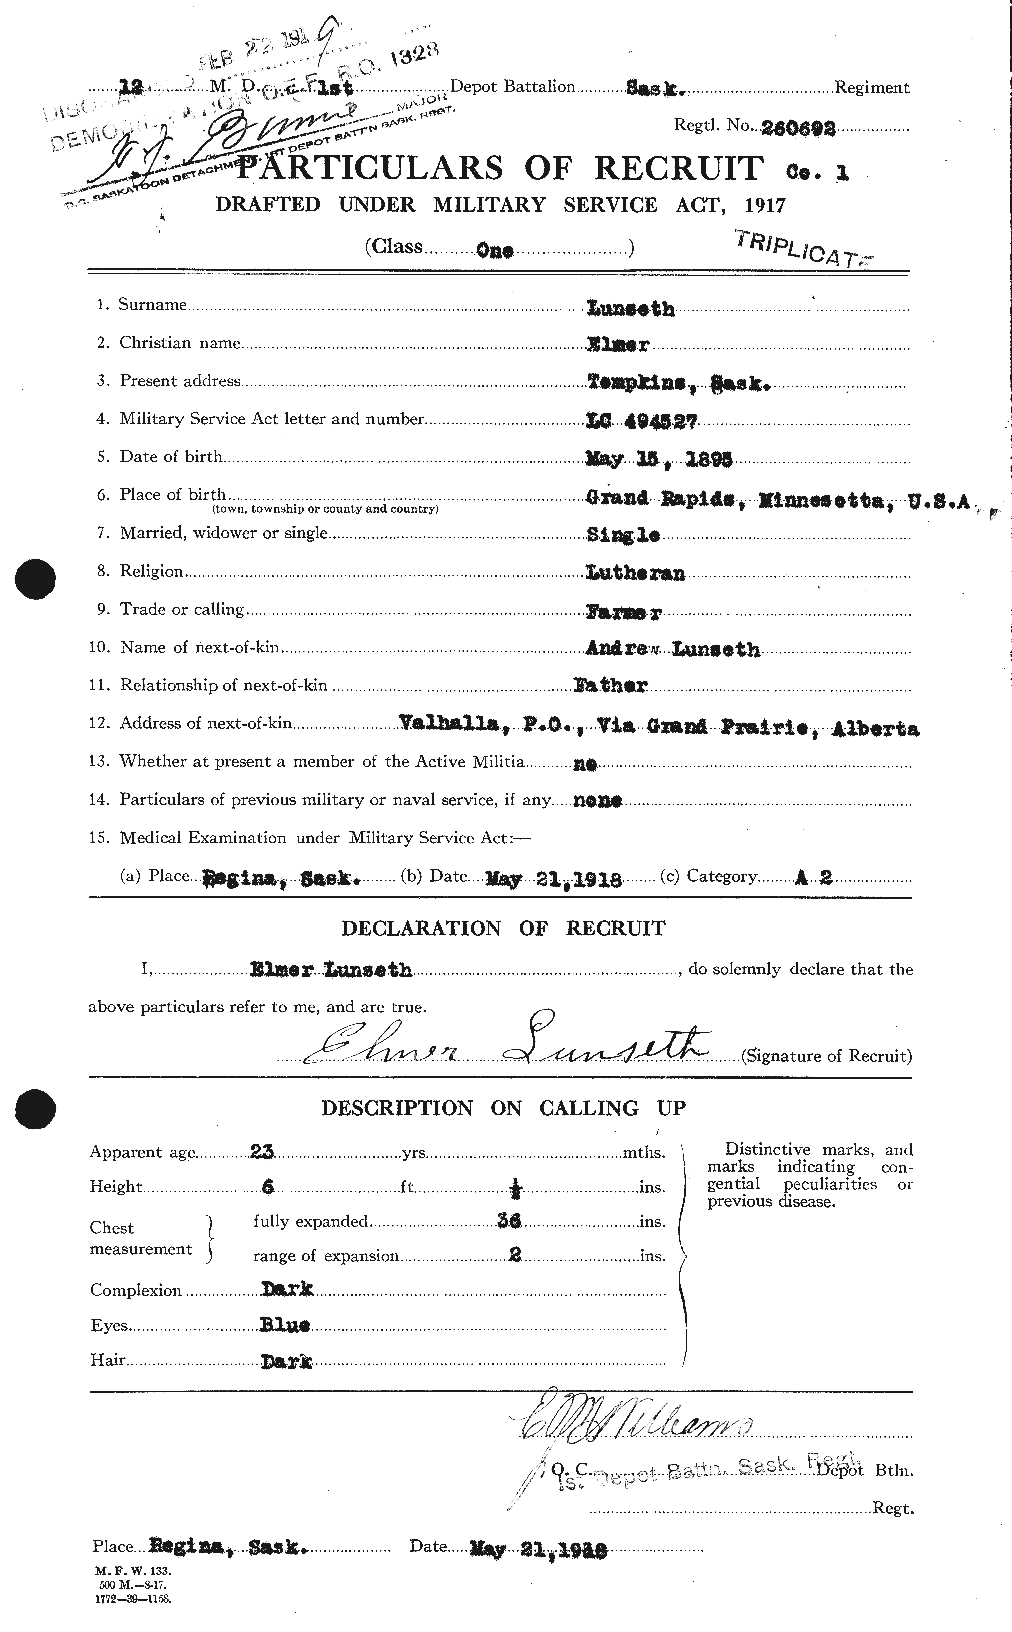 Dossiers du Personnel de la Première Guerre mondiale - CEC 473472a